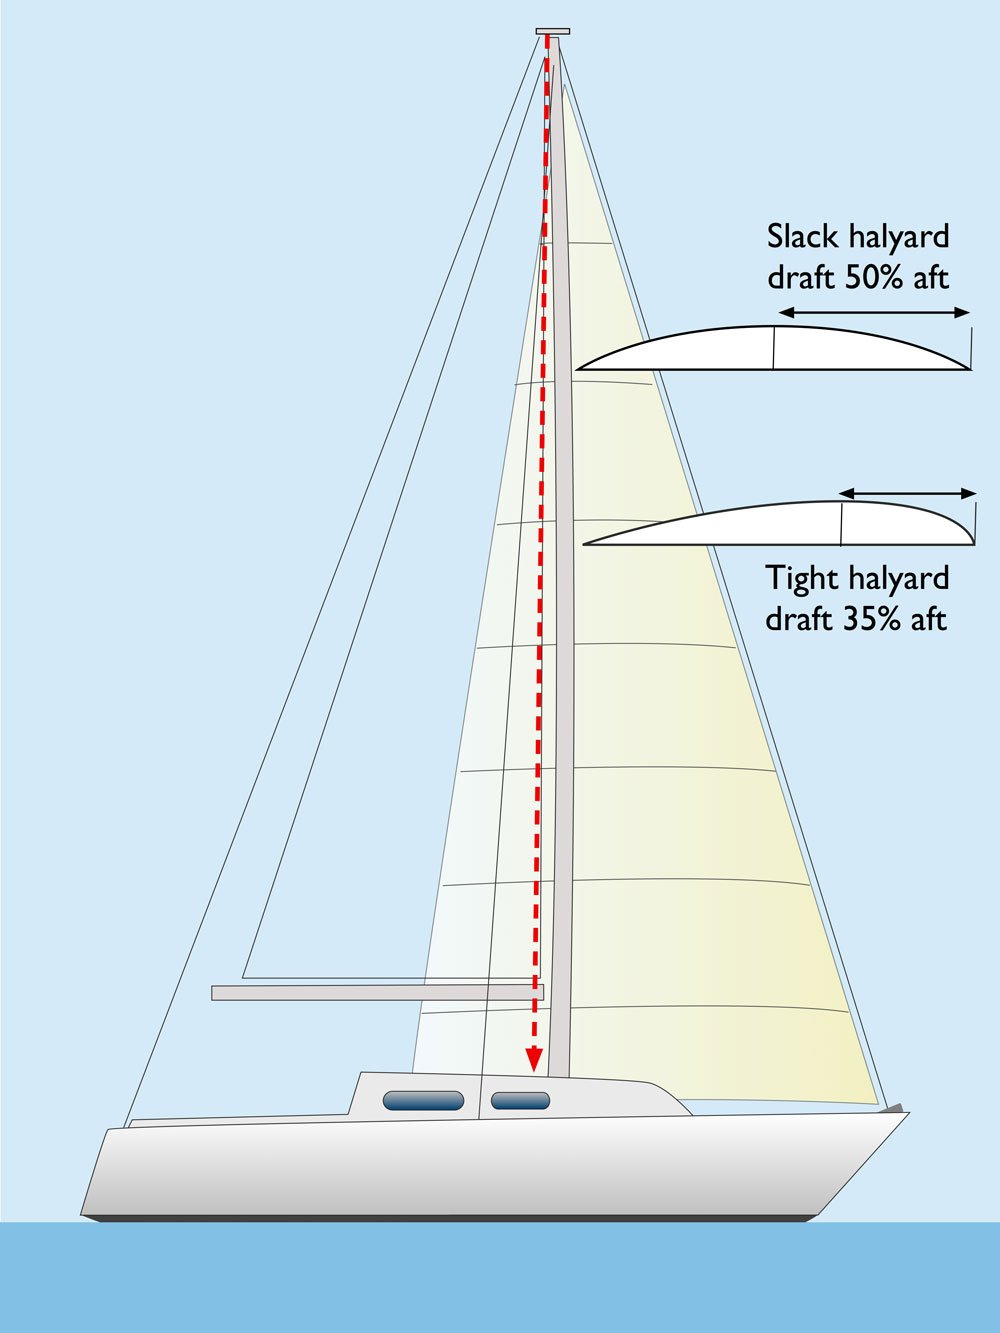 genoa sail for sailboat